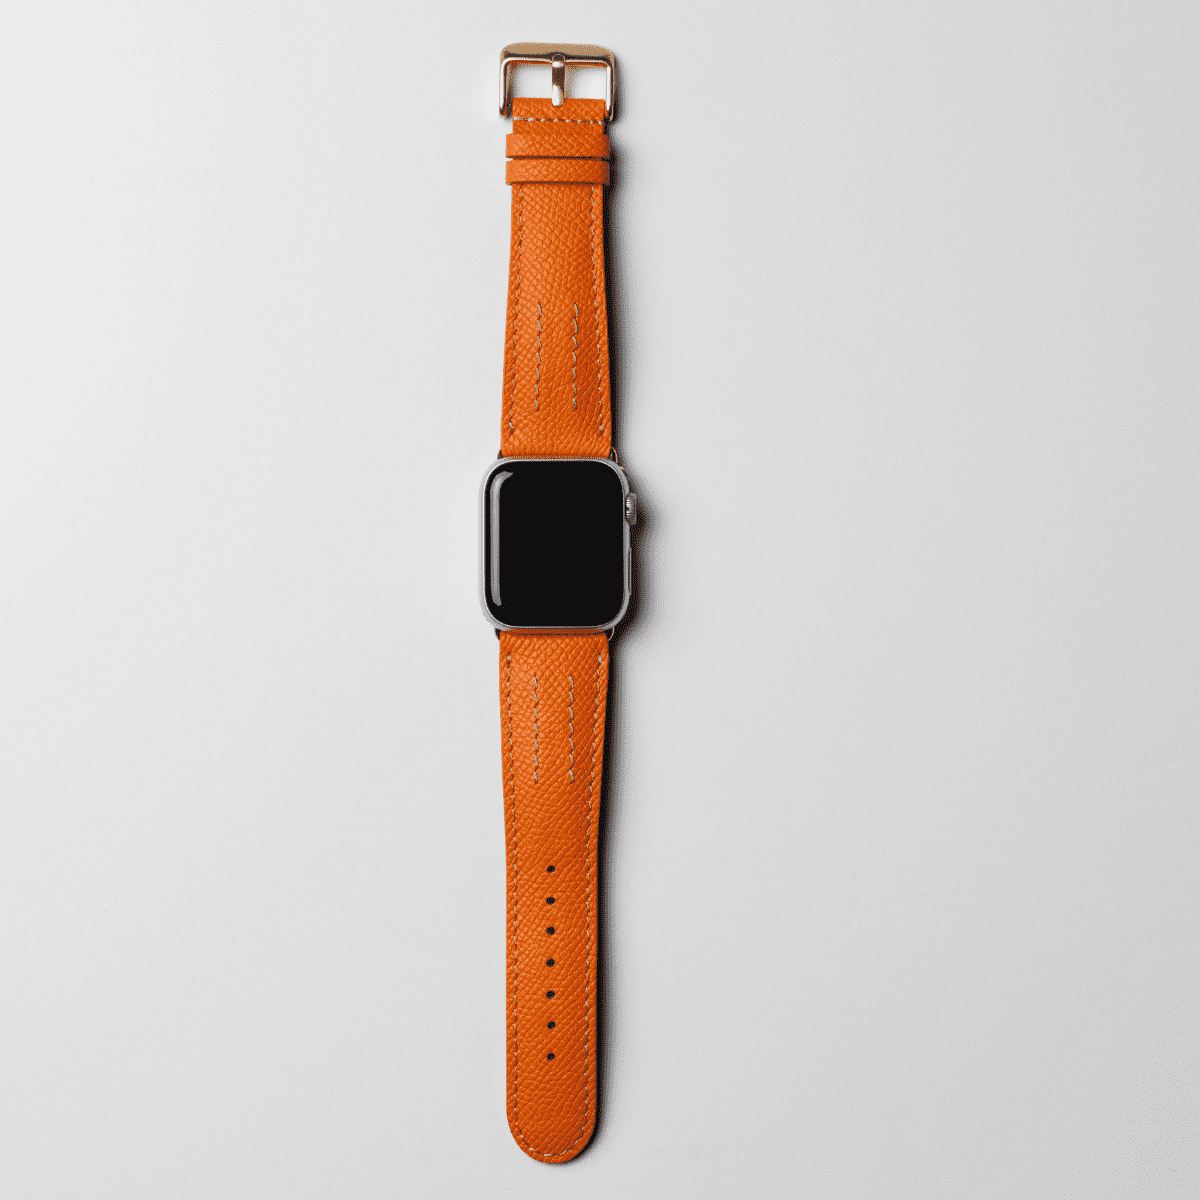 Applewatch 45mm レザーベルト HERMES オレンジ-